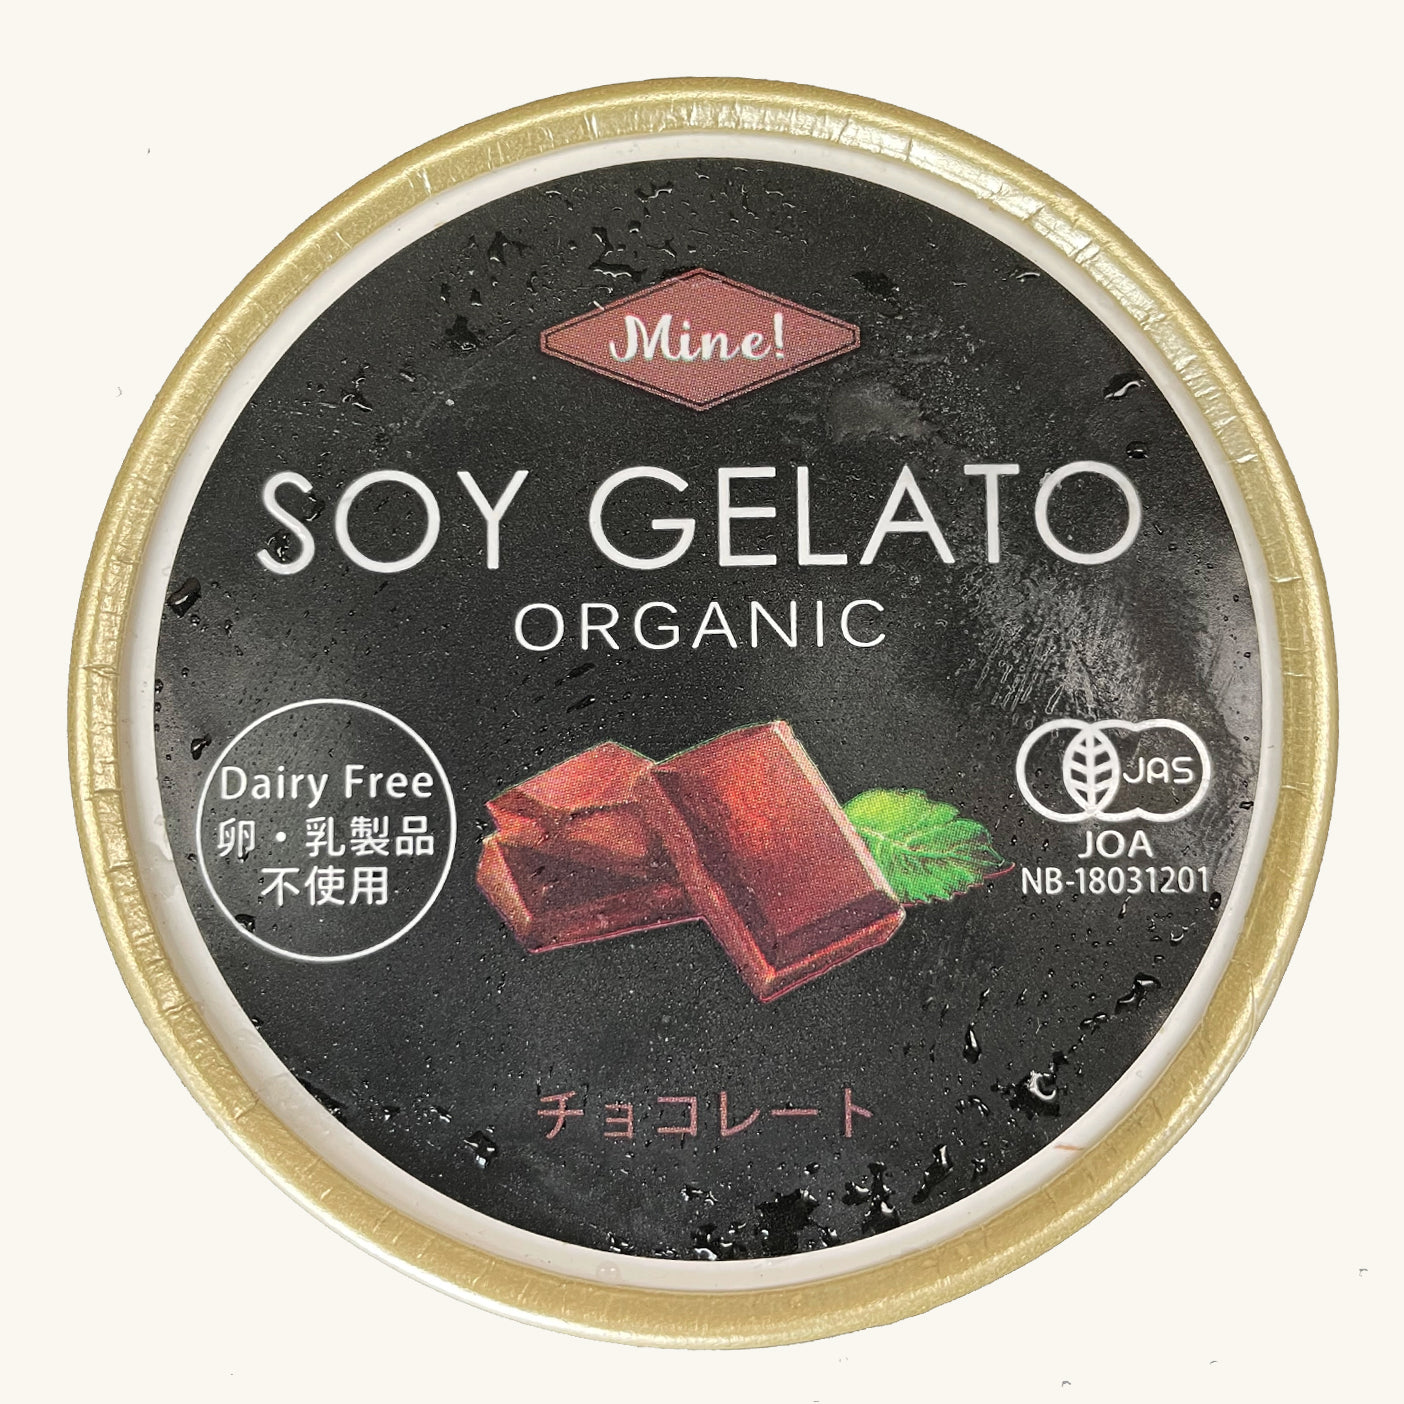 有機 JAS オーガニック 無添加 ジェラート アイス チョコレート味 乳製品・卵不使用 (85ml x 5個) ホライズンファームズ